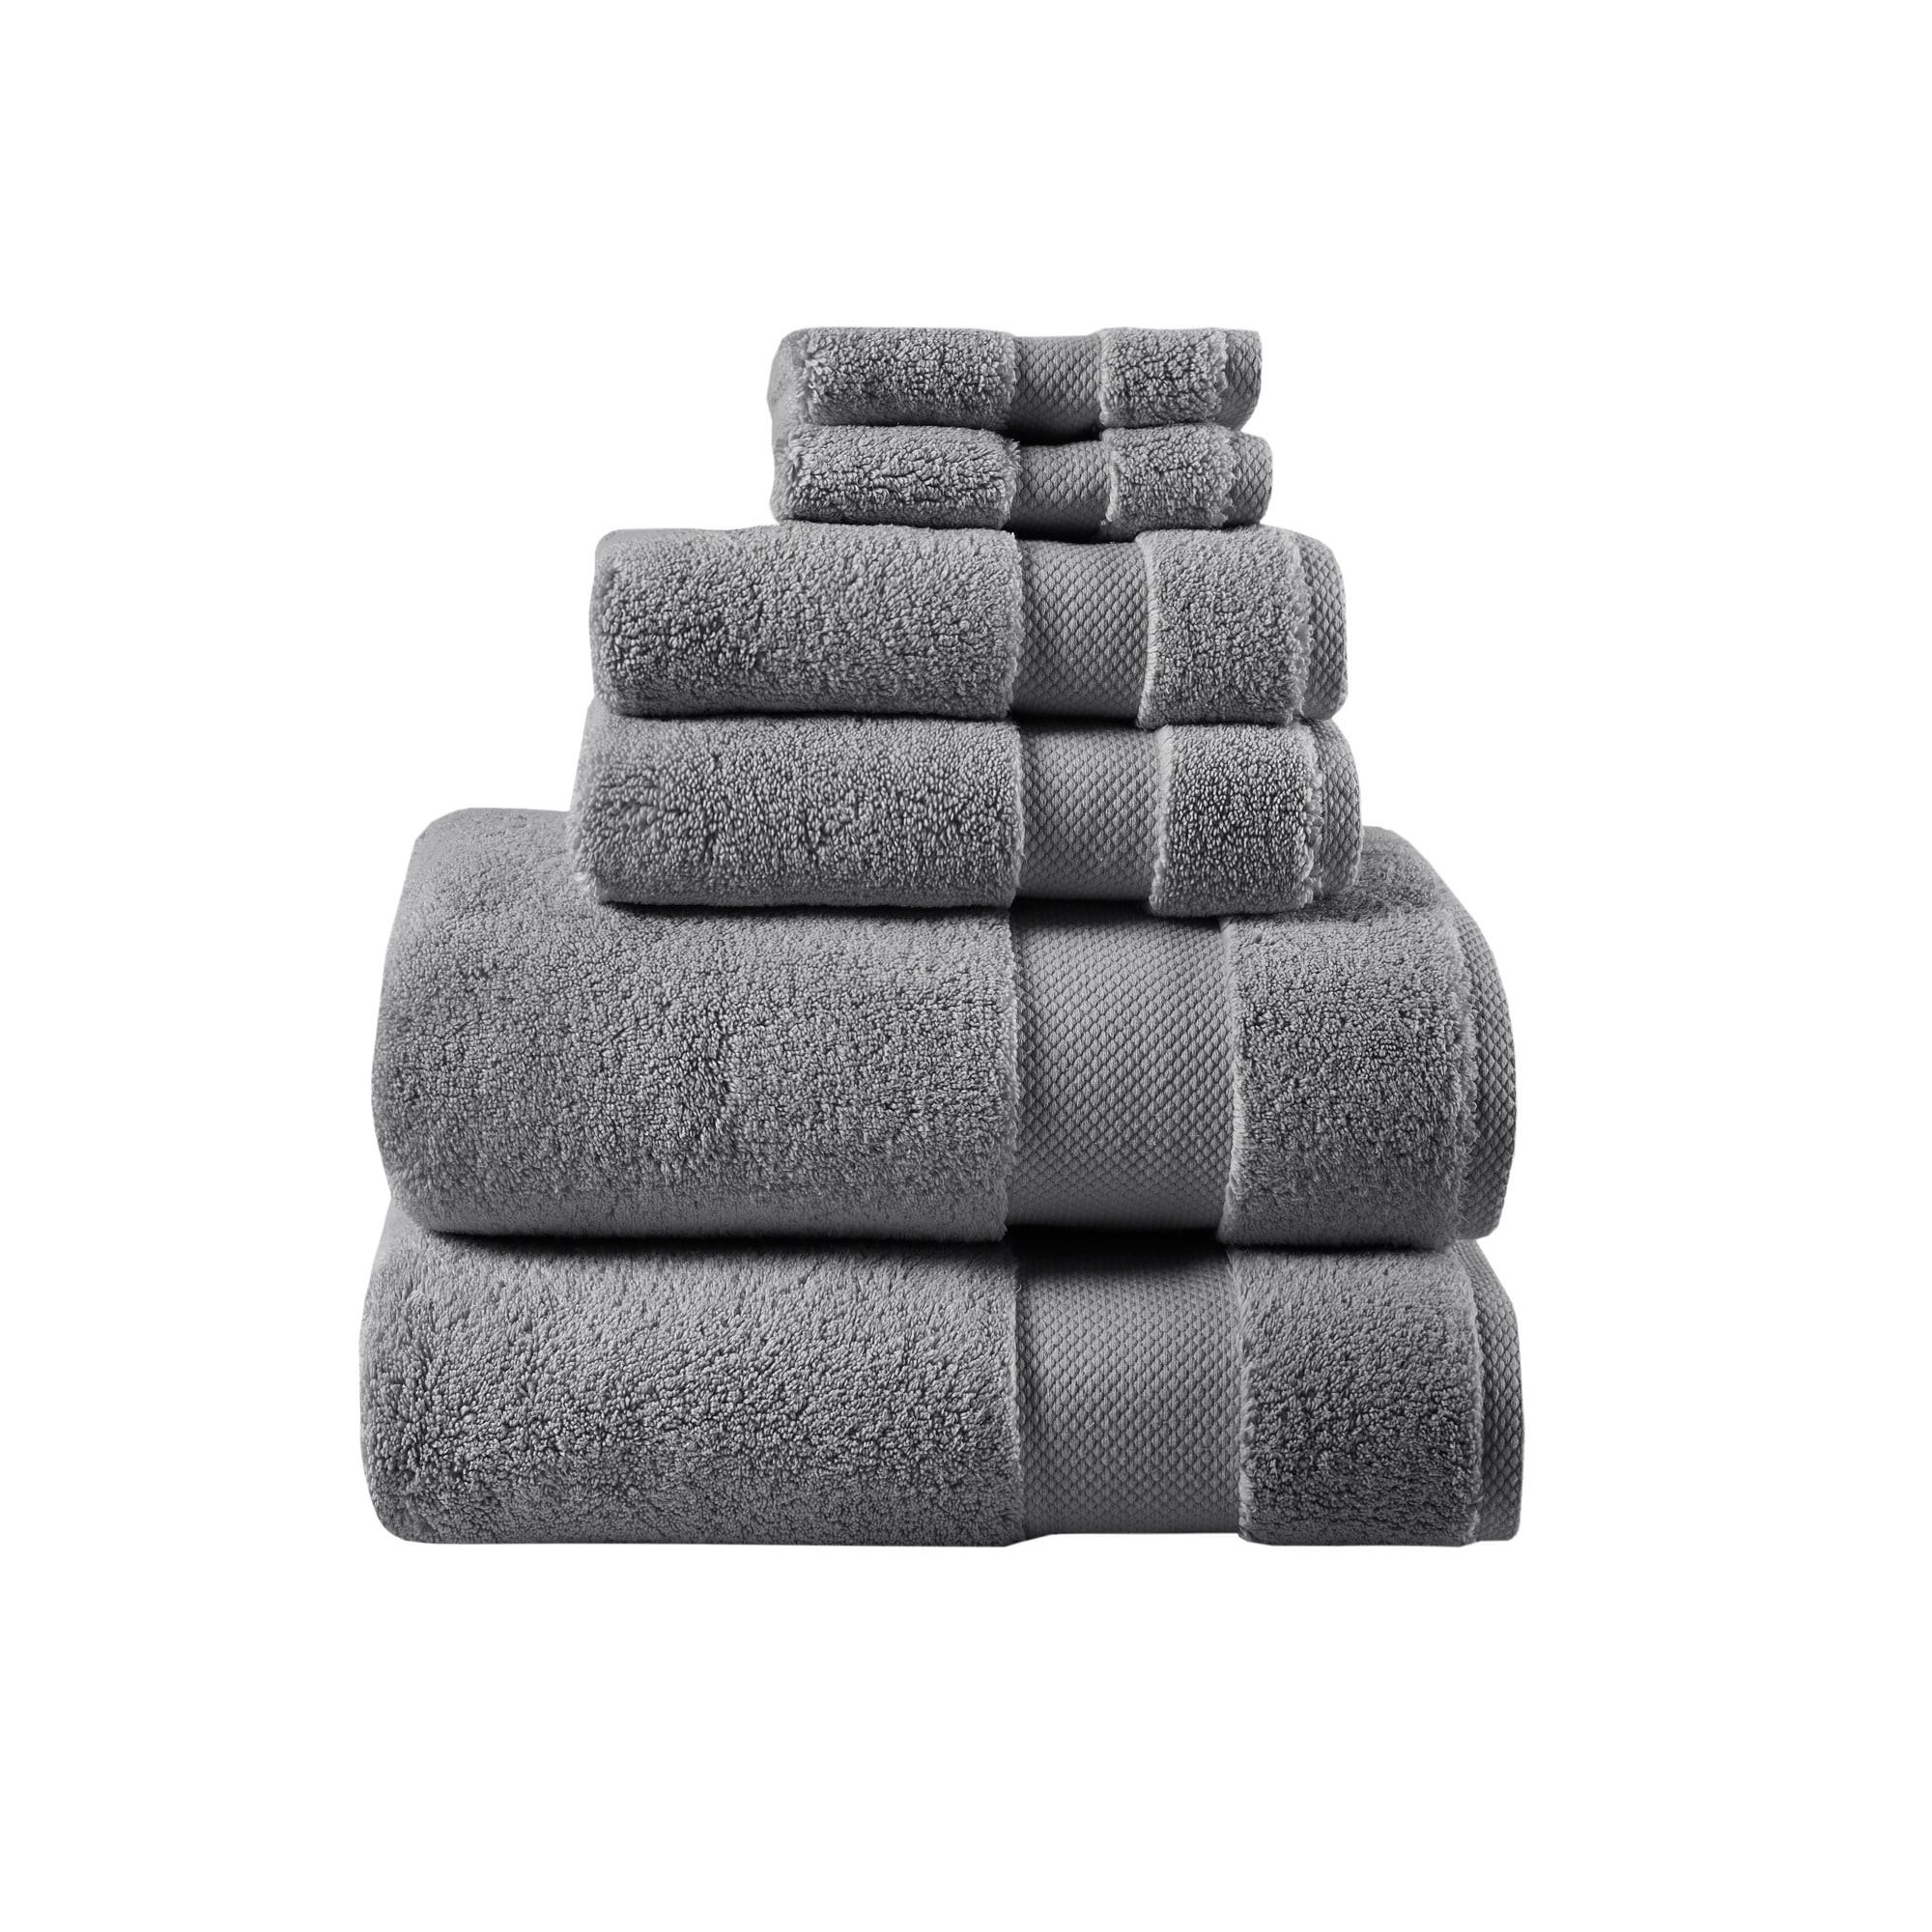 MADISON PARK SIGNATURE Splendor 1000gsm 100% Cotton 6 Piece Towel Set  30x58, 1 unit - Kroger